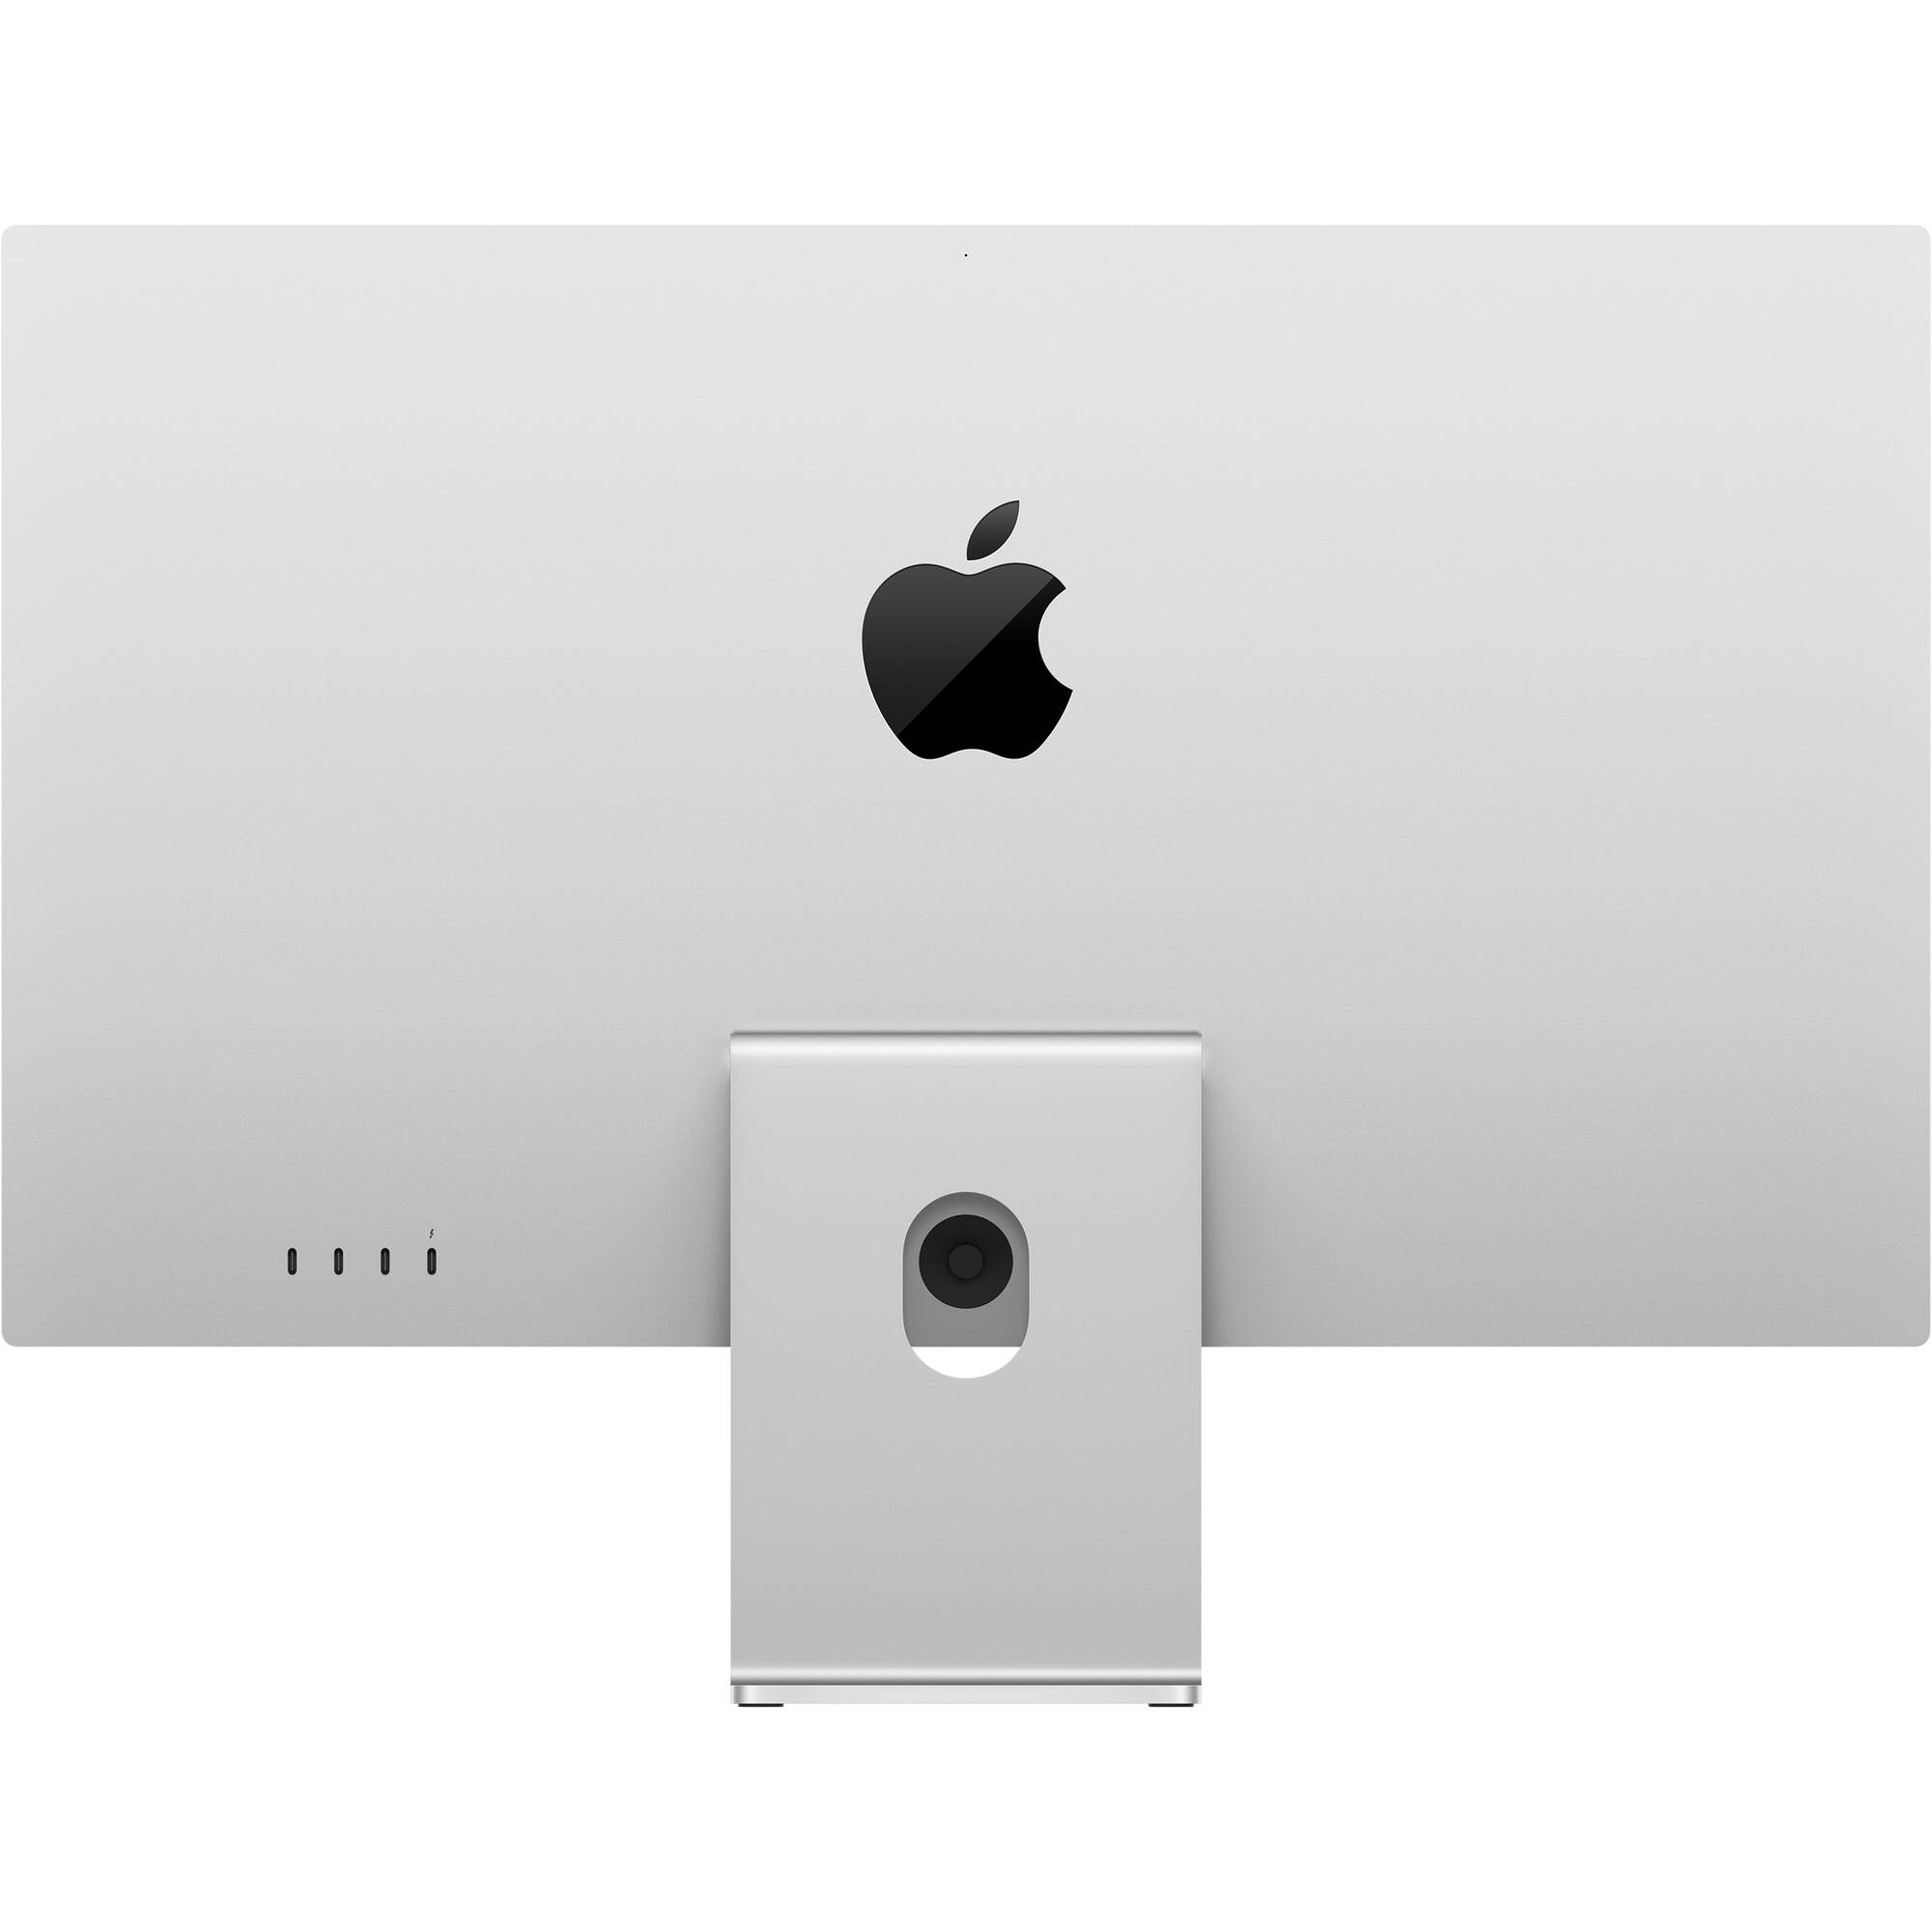 Display de estudio de Apple 27 "(soporte ajustable de vidrio, inclinación y altura de vidrio, inc...